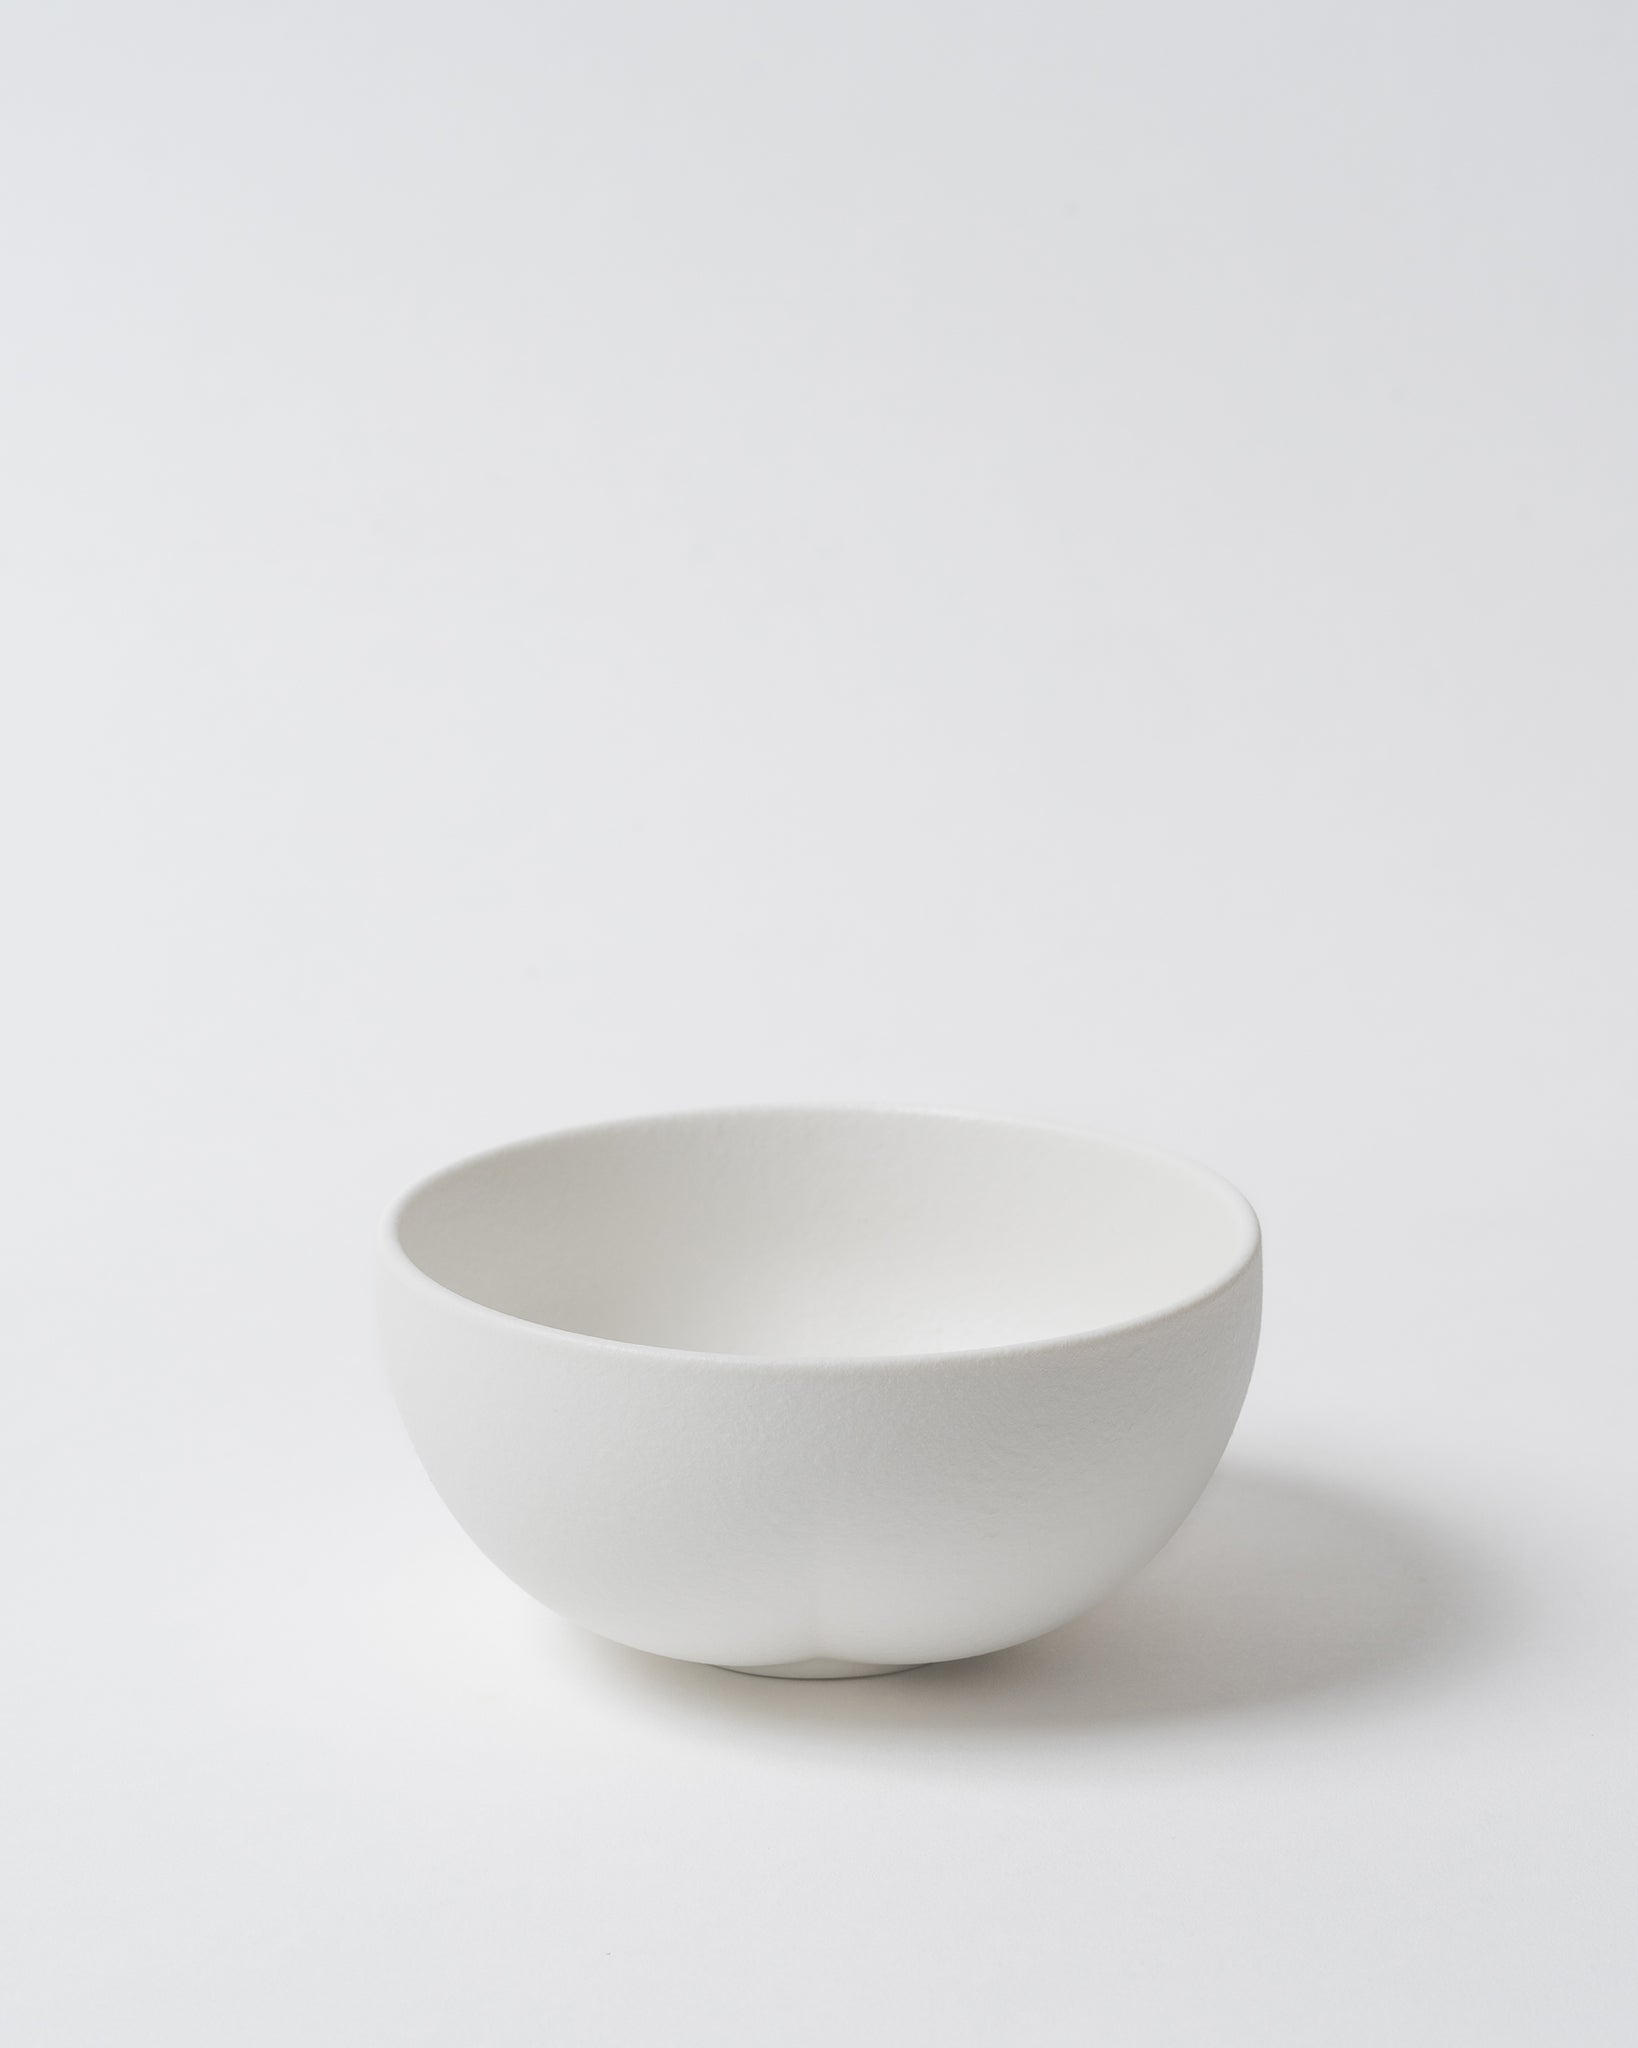 5" White Porcelain Cloud Bowl